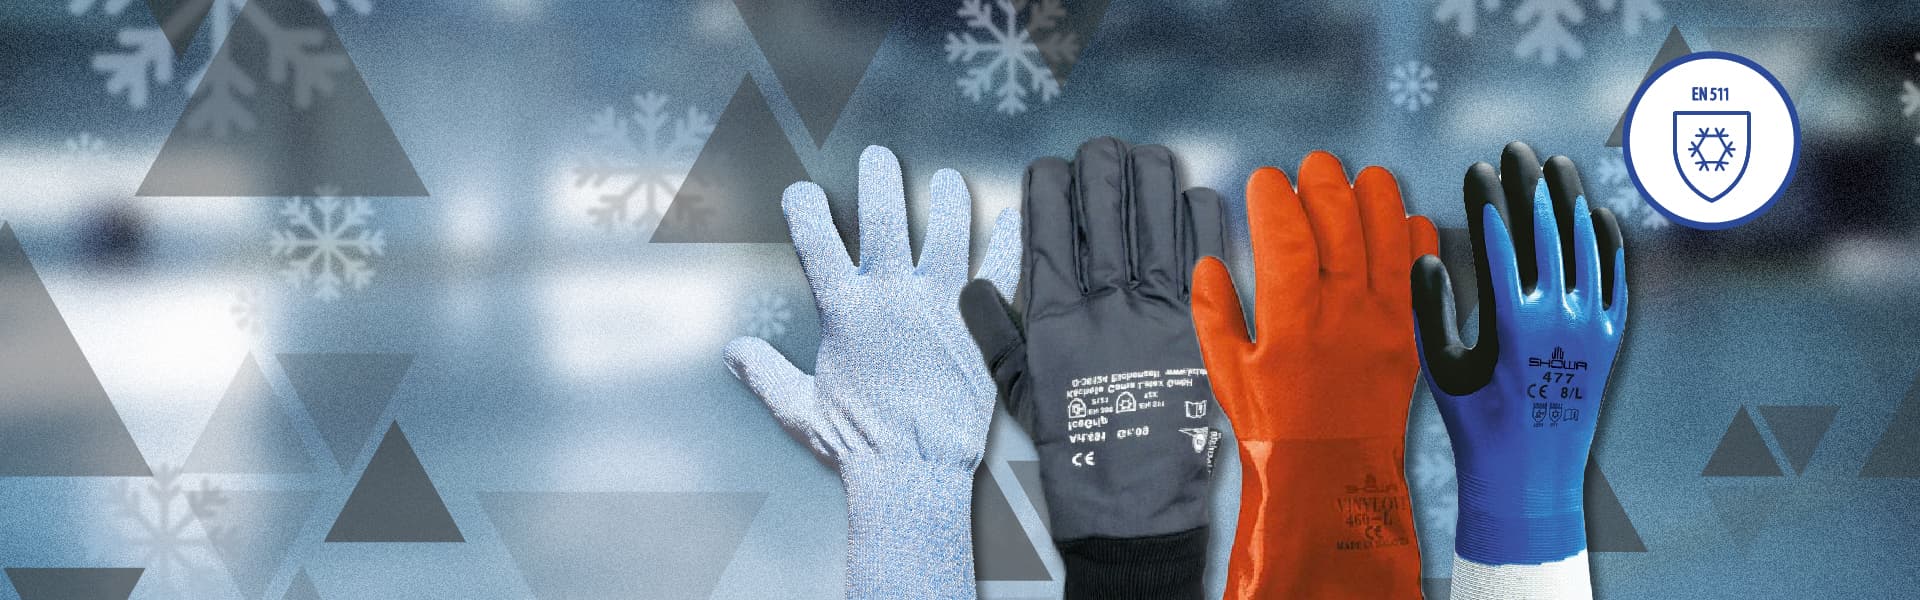 Les meilleurs gants froids pour travailler, lequel choisir?